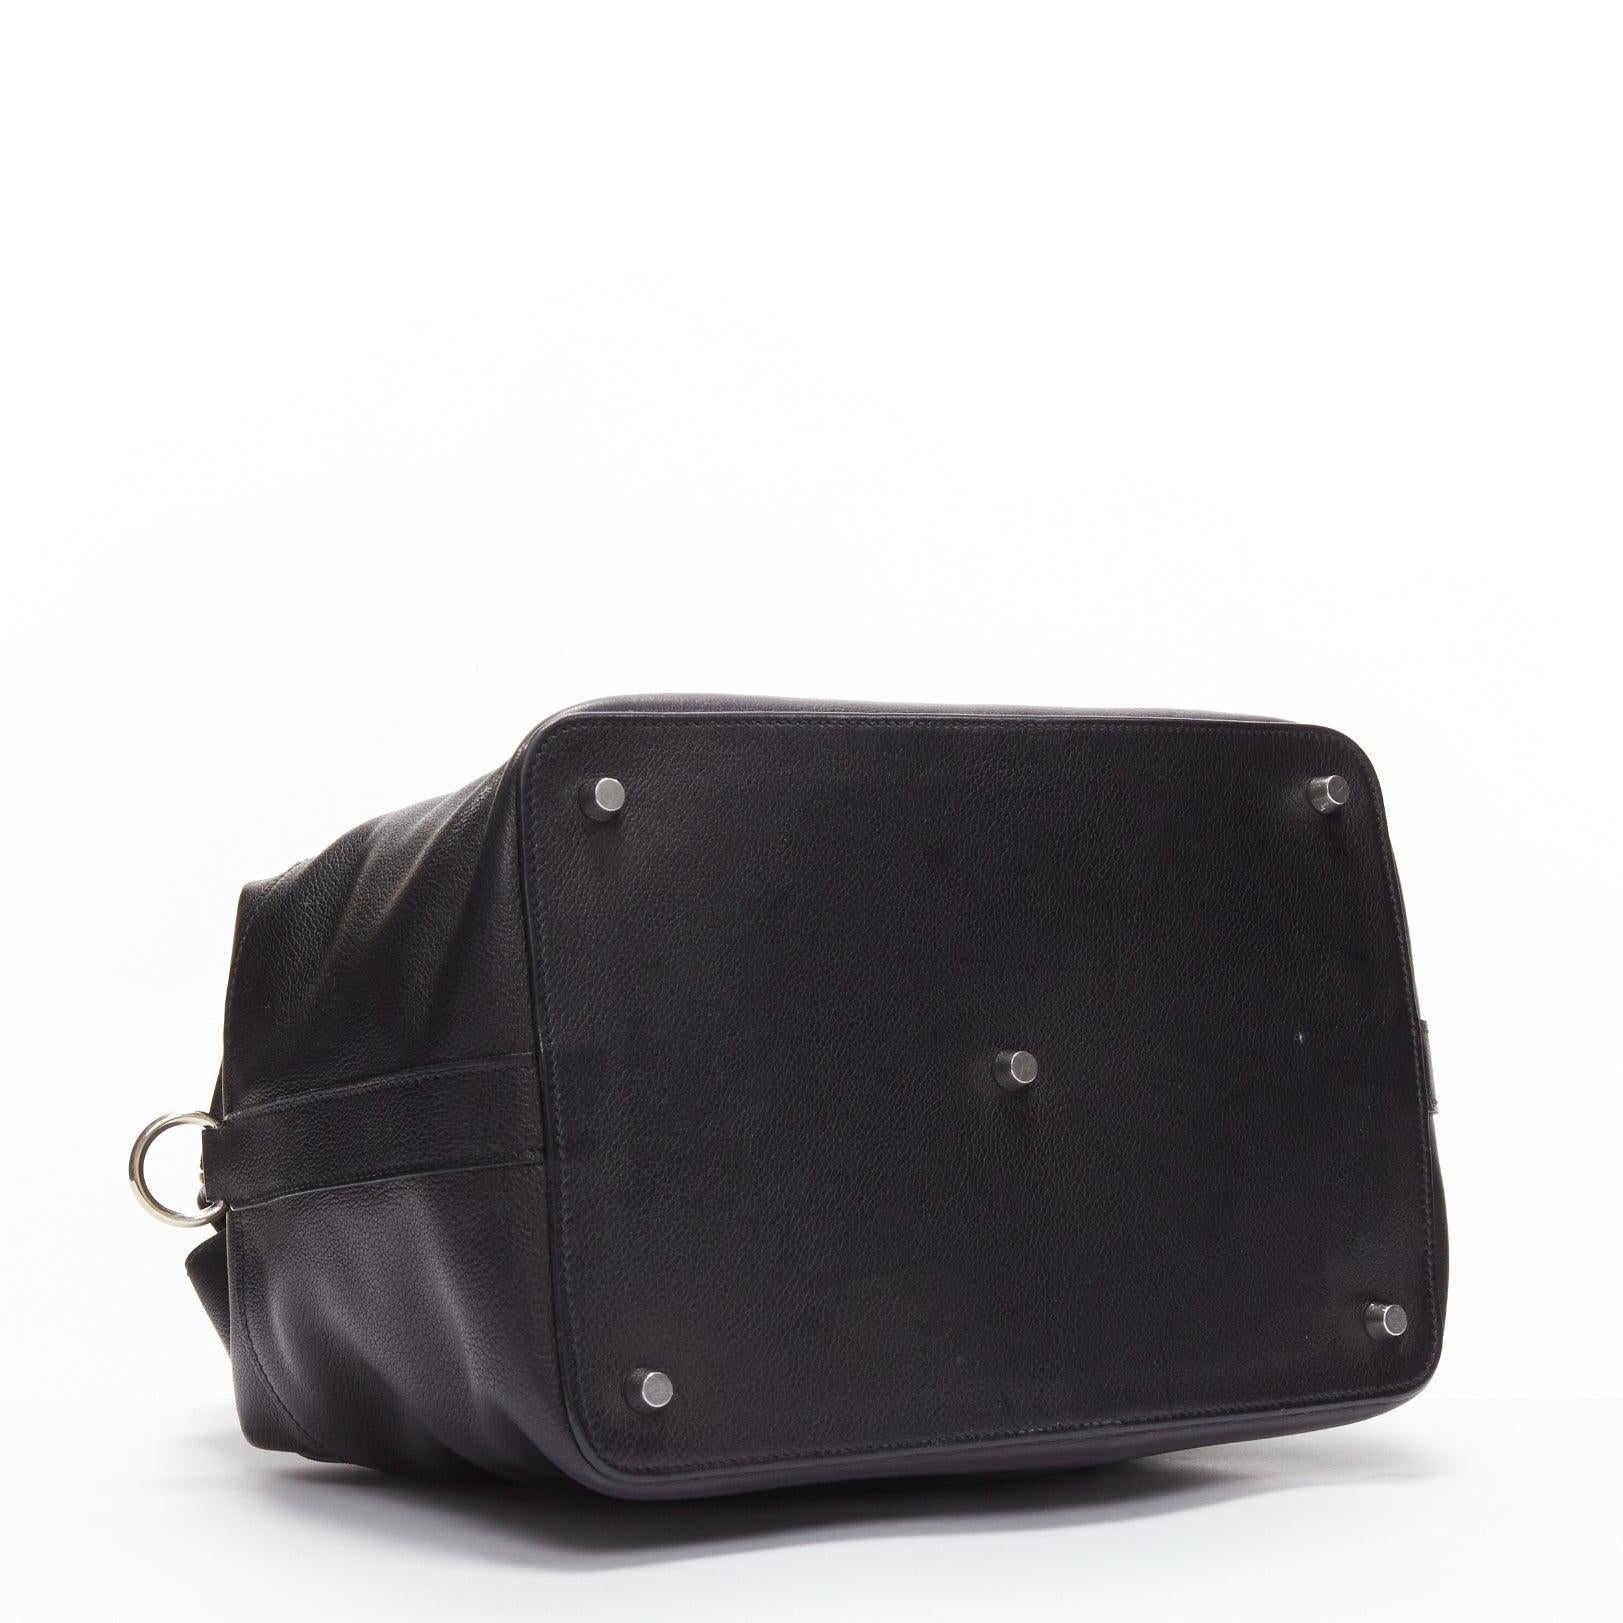 HERMES Toolbox 26 black leather PHW turnlock satchel bag 2